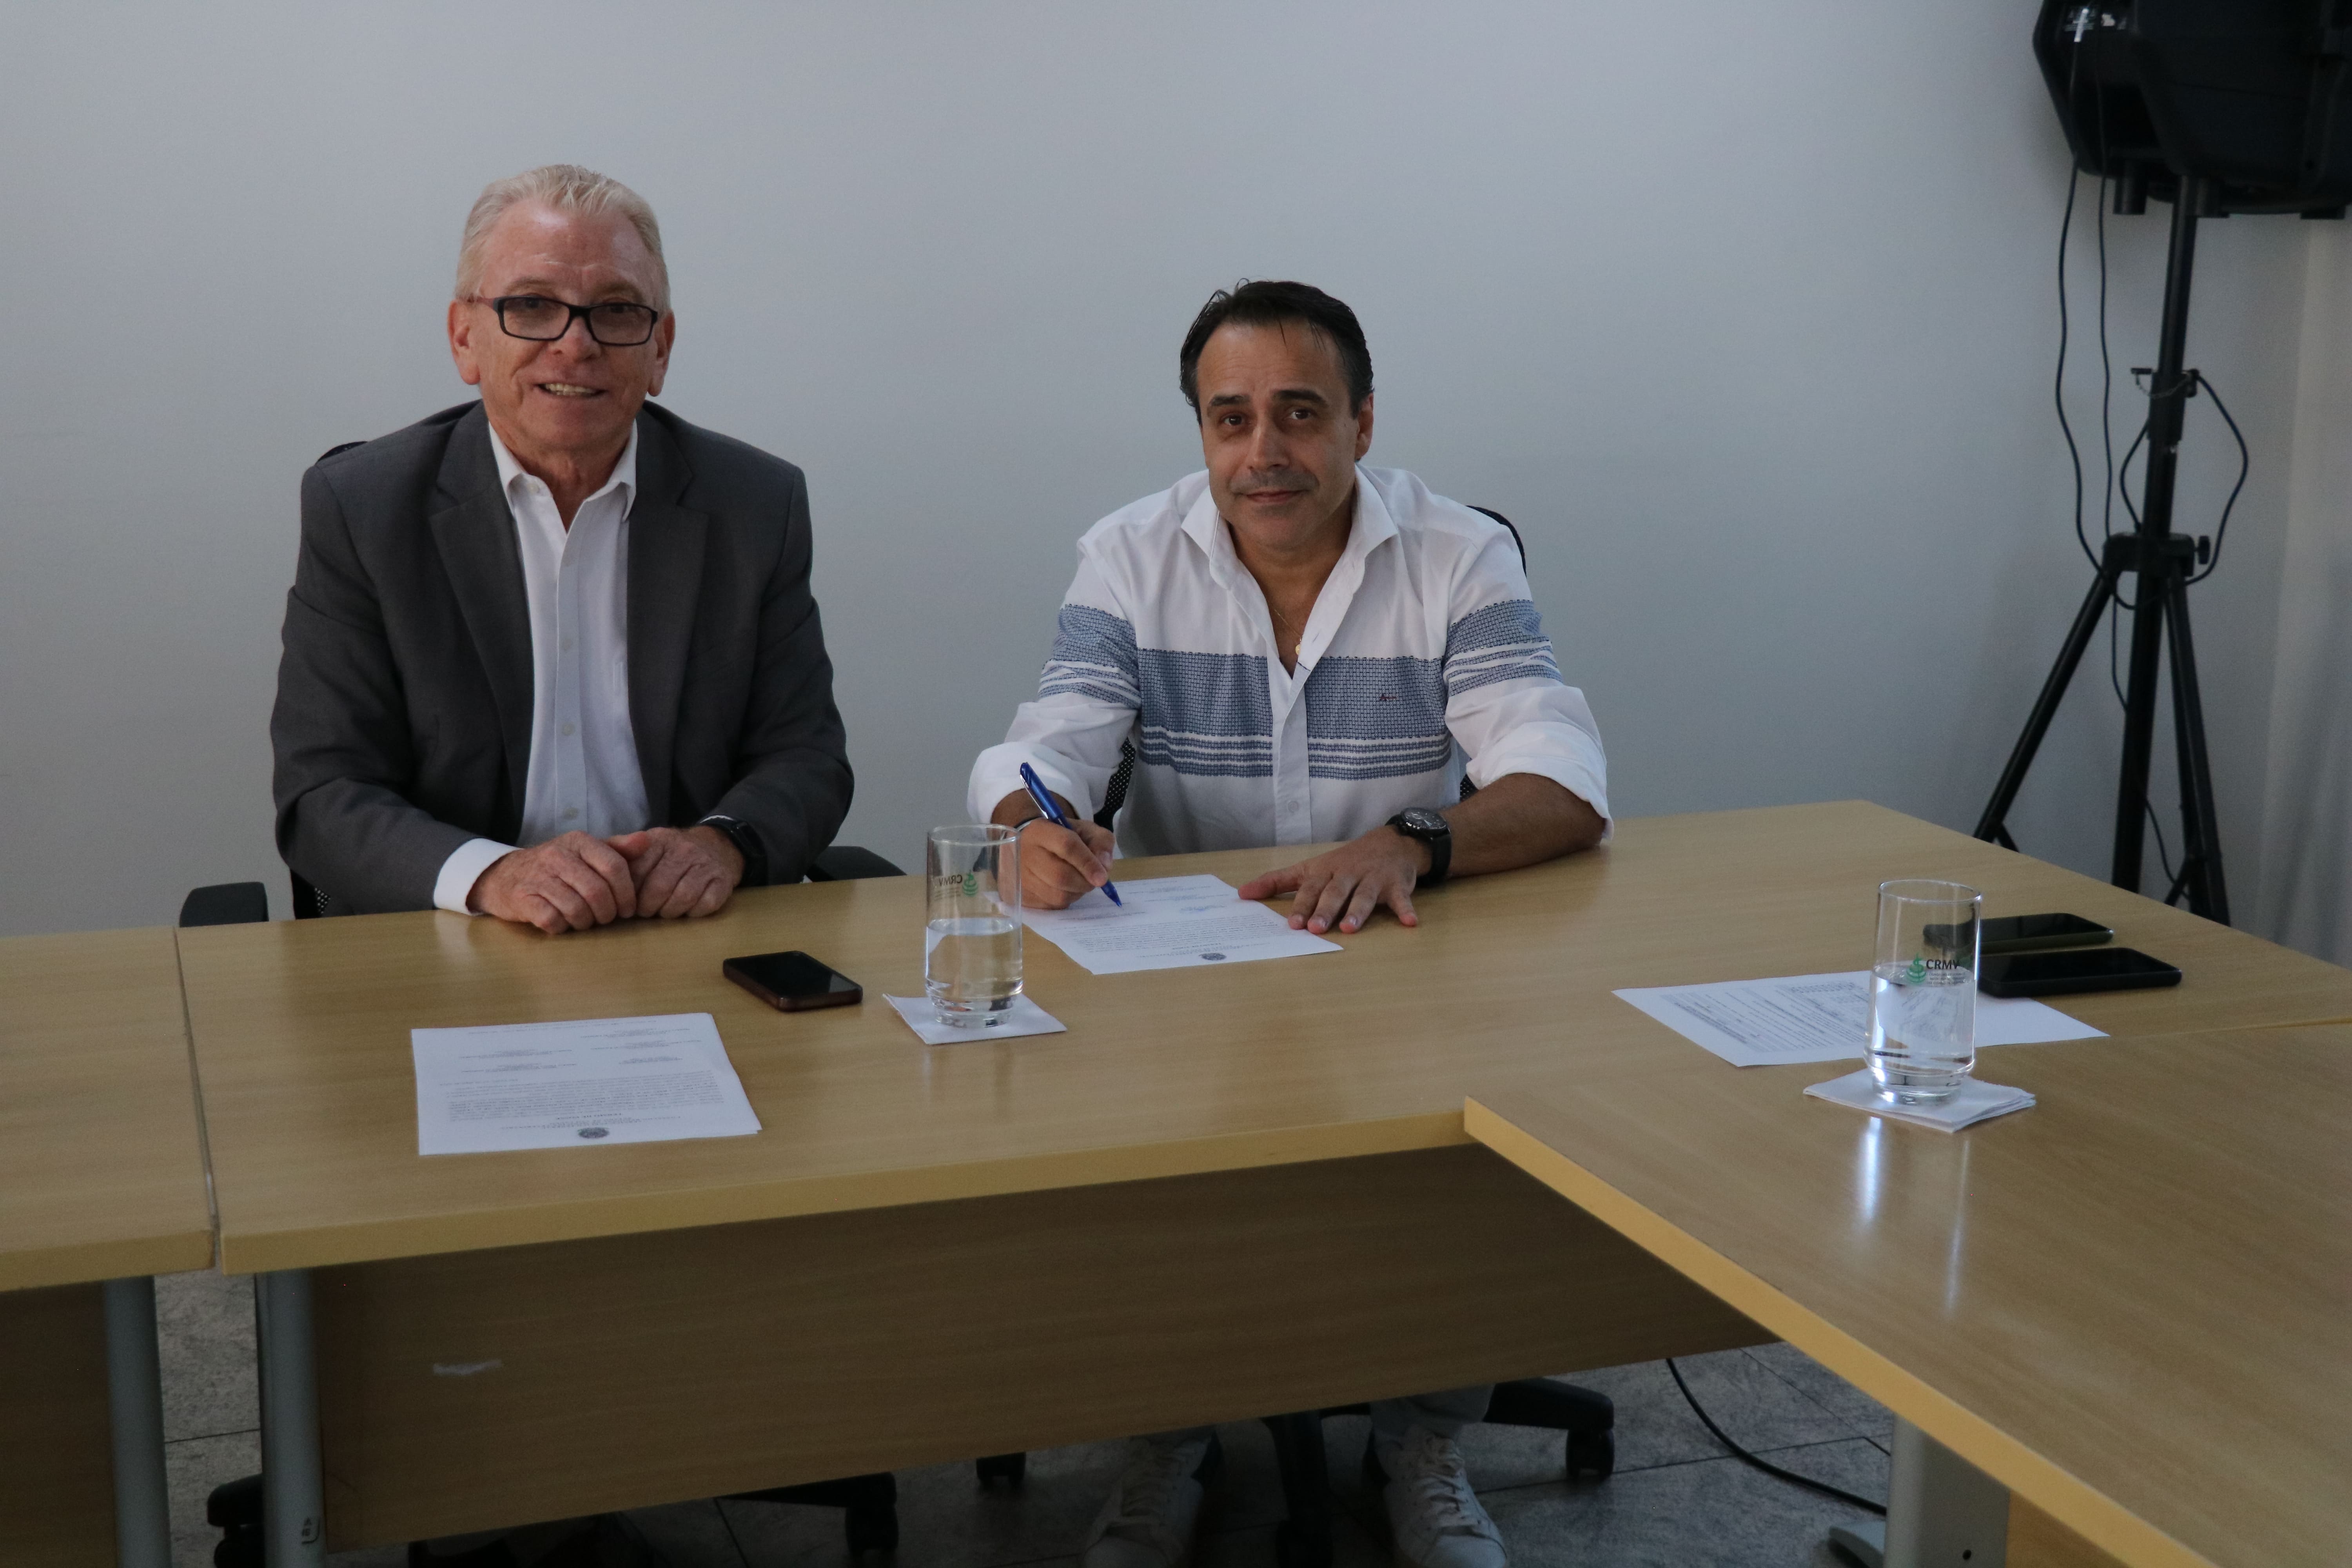 Na foto, o médico-veterinário Marco Antônio Chiaradia Berti assina a posse como membro da Comissão de Entidades Veterinárias Regionais do Estado de São Paulo do CRMV-SP, ao lado do presidente do CRMV-SP, Odemilson Donizete Mossero.